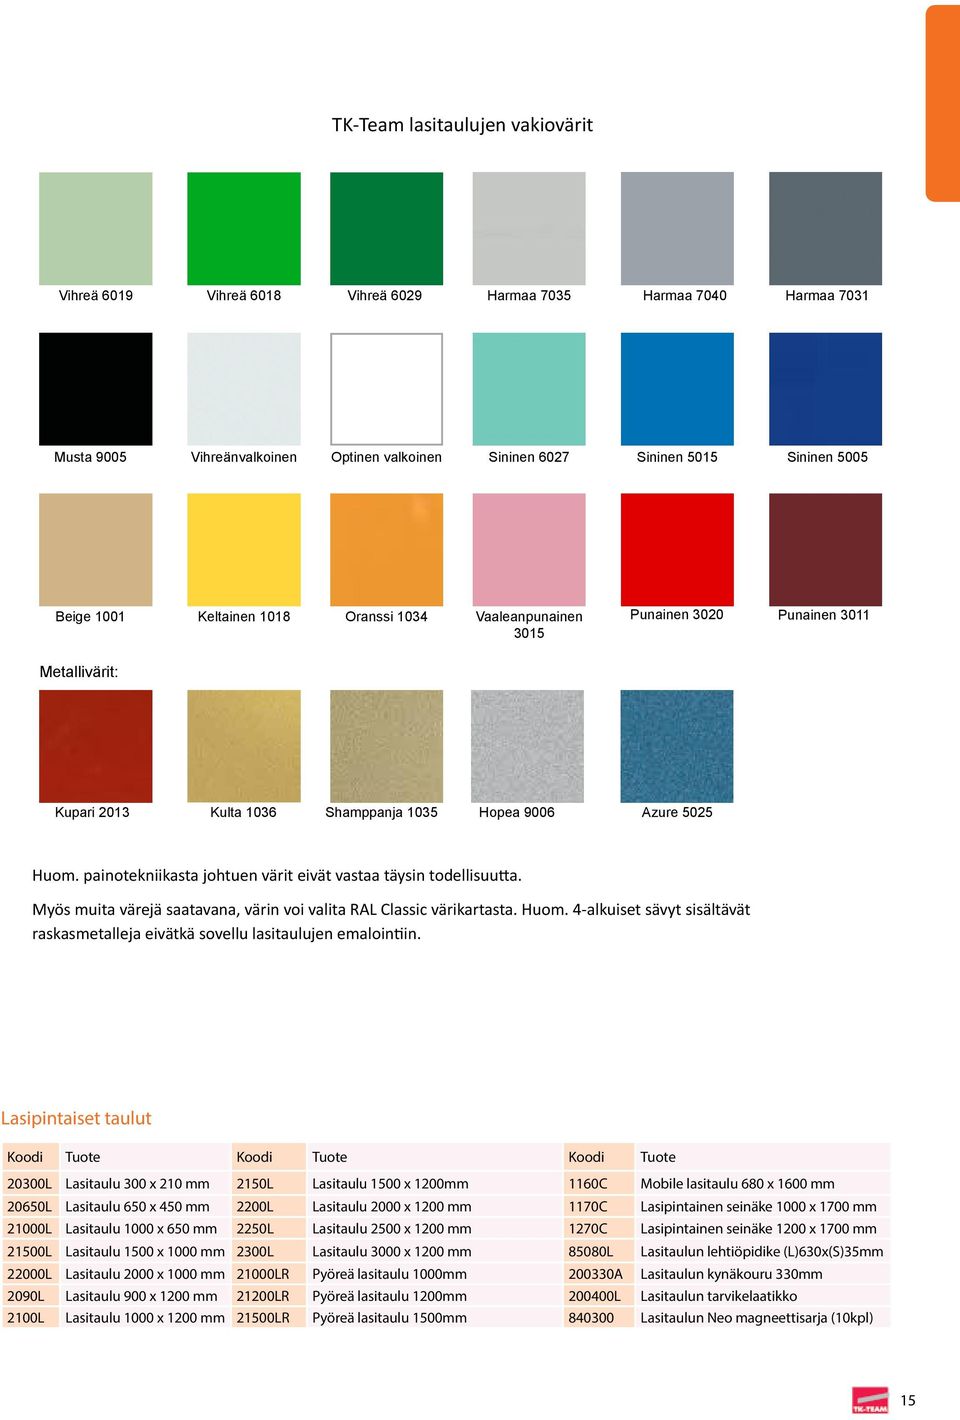 painotekniikasta johtuen värit eivät vastaa täysin todellisuutta. Myös muita värejä saatavana, värin voi valita RAL Classic värikartasta. Huom.